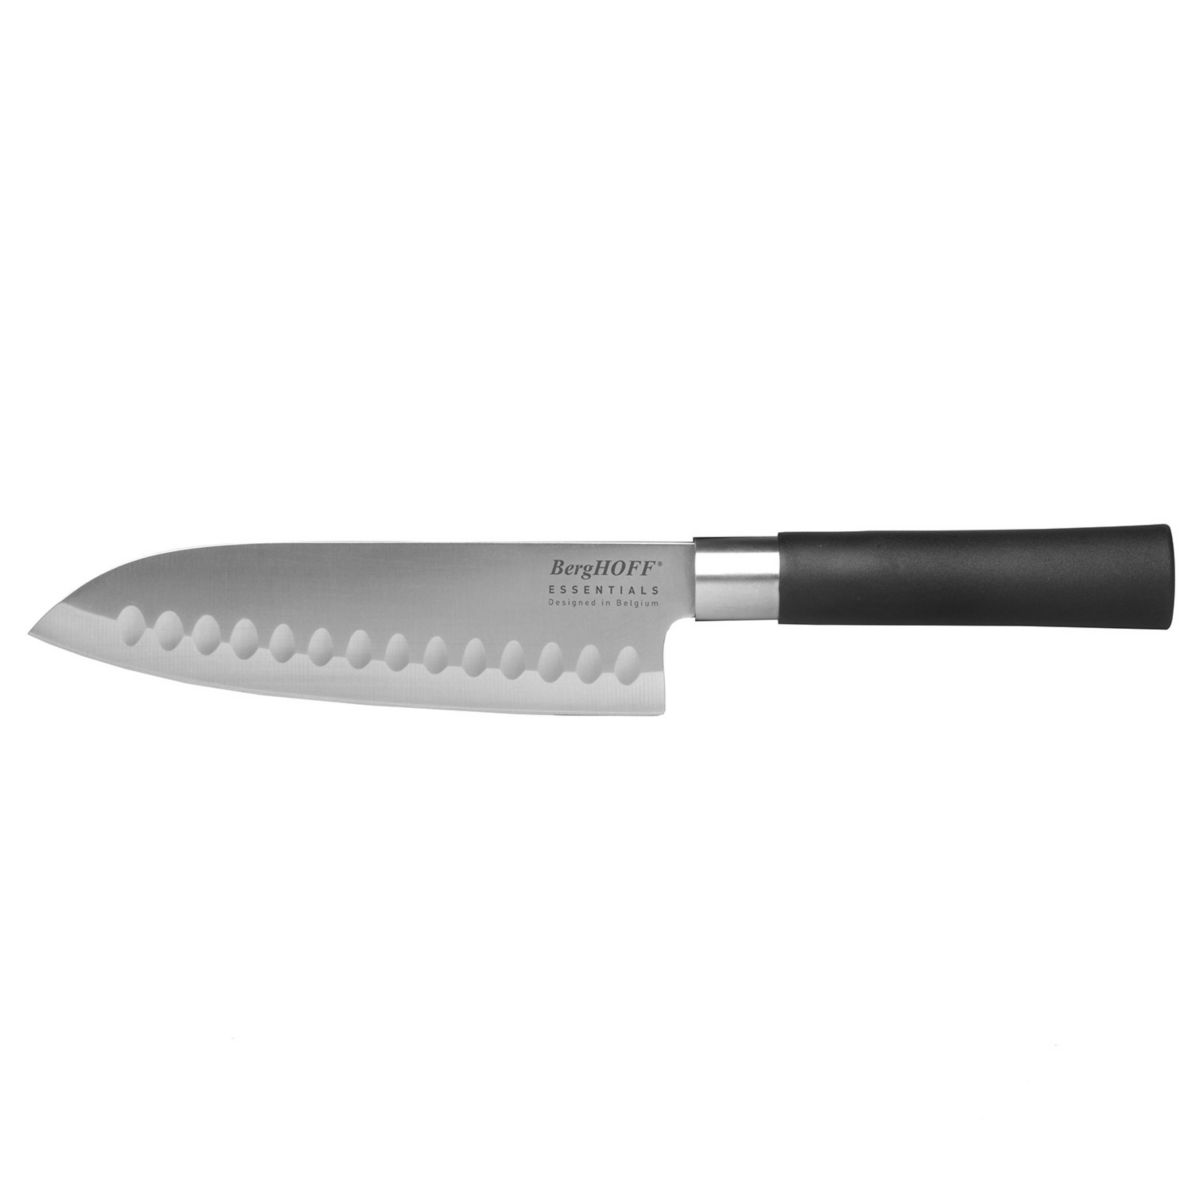 BergHOFF Essentials 7-in. Stainless Steel Santoku Knife BergHOFF